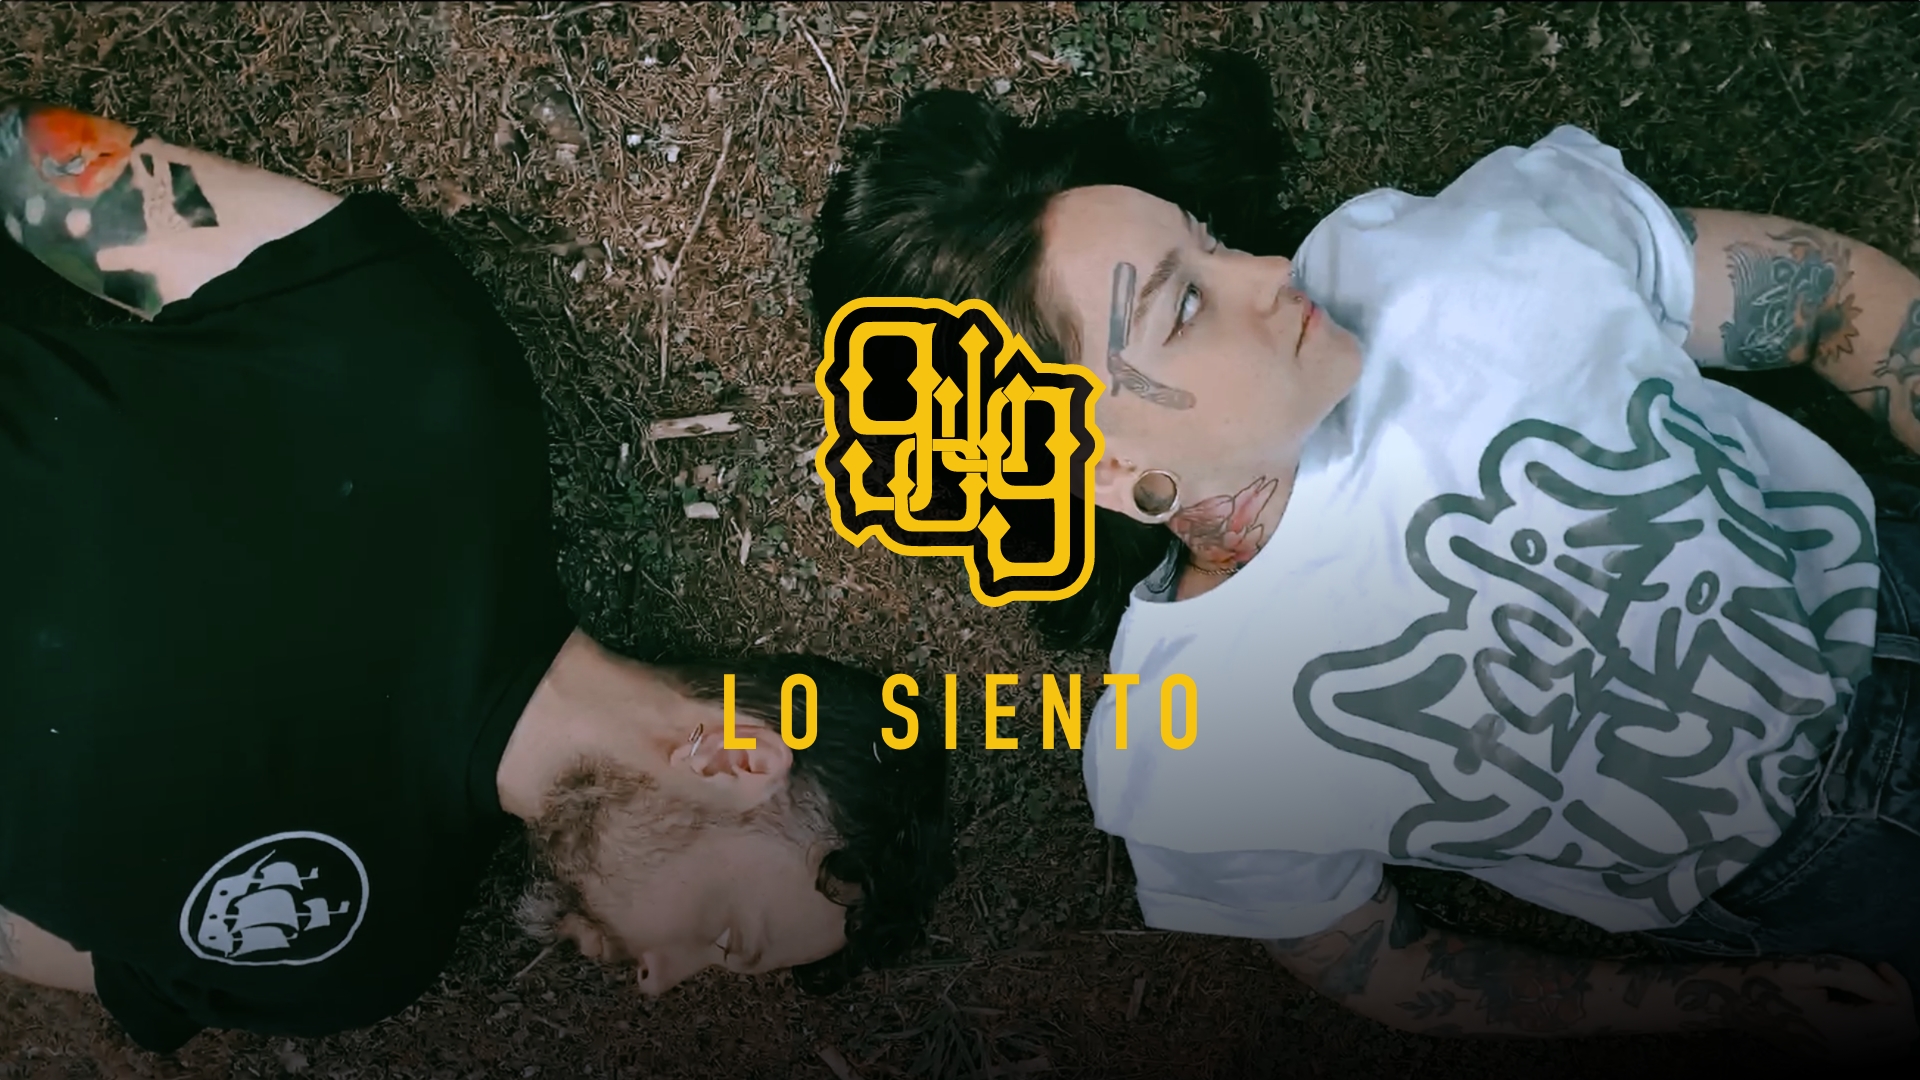 Giro de un Grito presenta el video oficial de "Lo siento" por medio de Tropical Punk rRecords